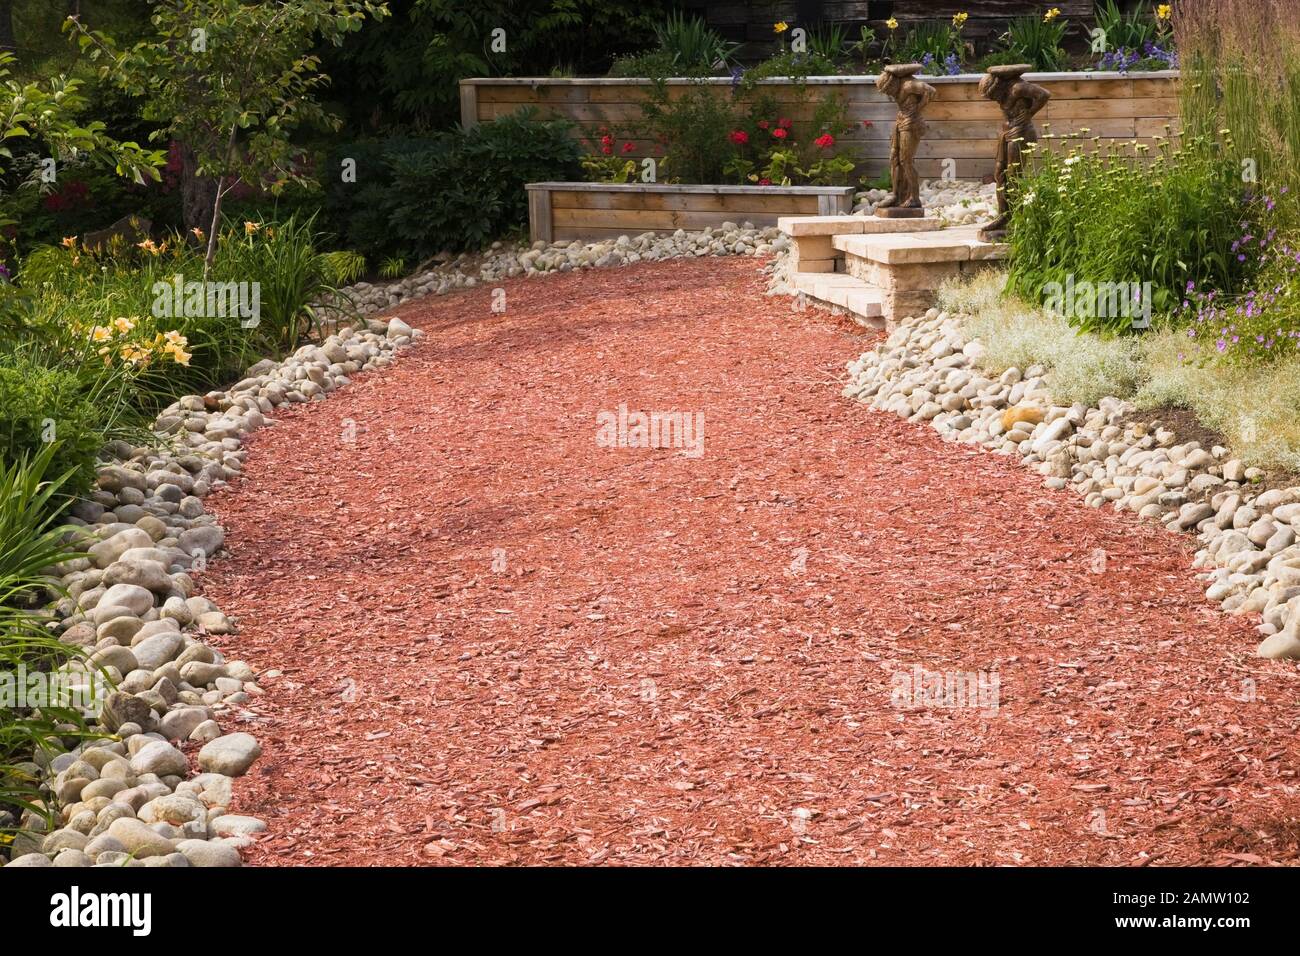 Le sentier de paillis de cèdre rouge et les frontières avec des fleurs jaunes d'Hemerocallis - Daylily et blanc de Leucanthemum vulgare - Oxeye Daisy dans le jardin d'arrière-cour Banque D'Images